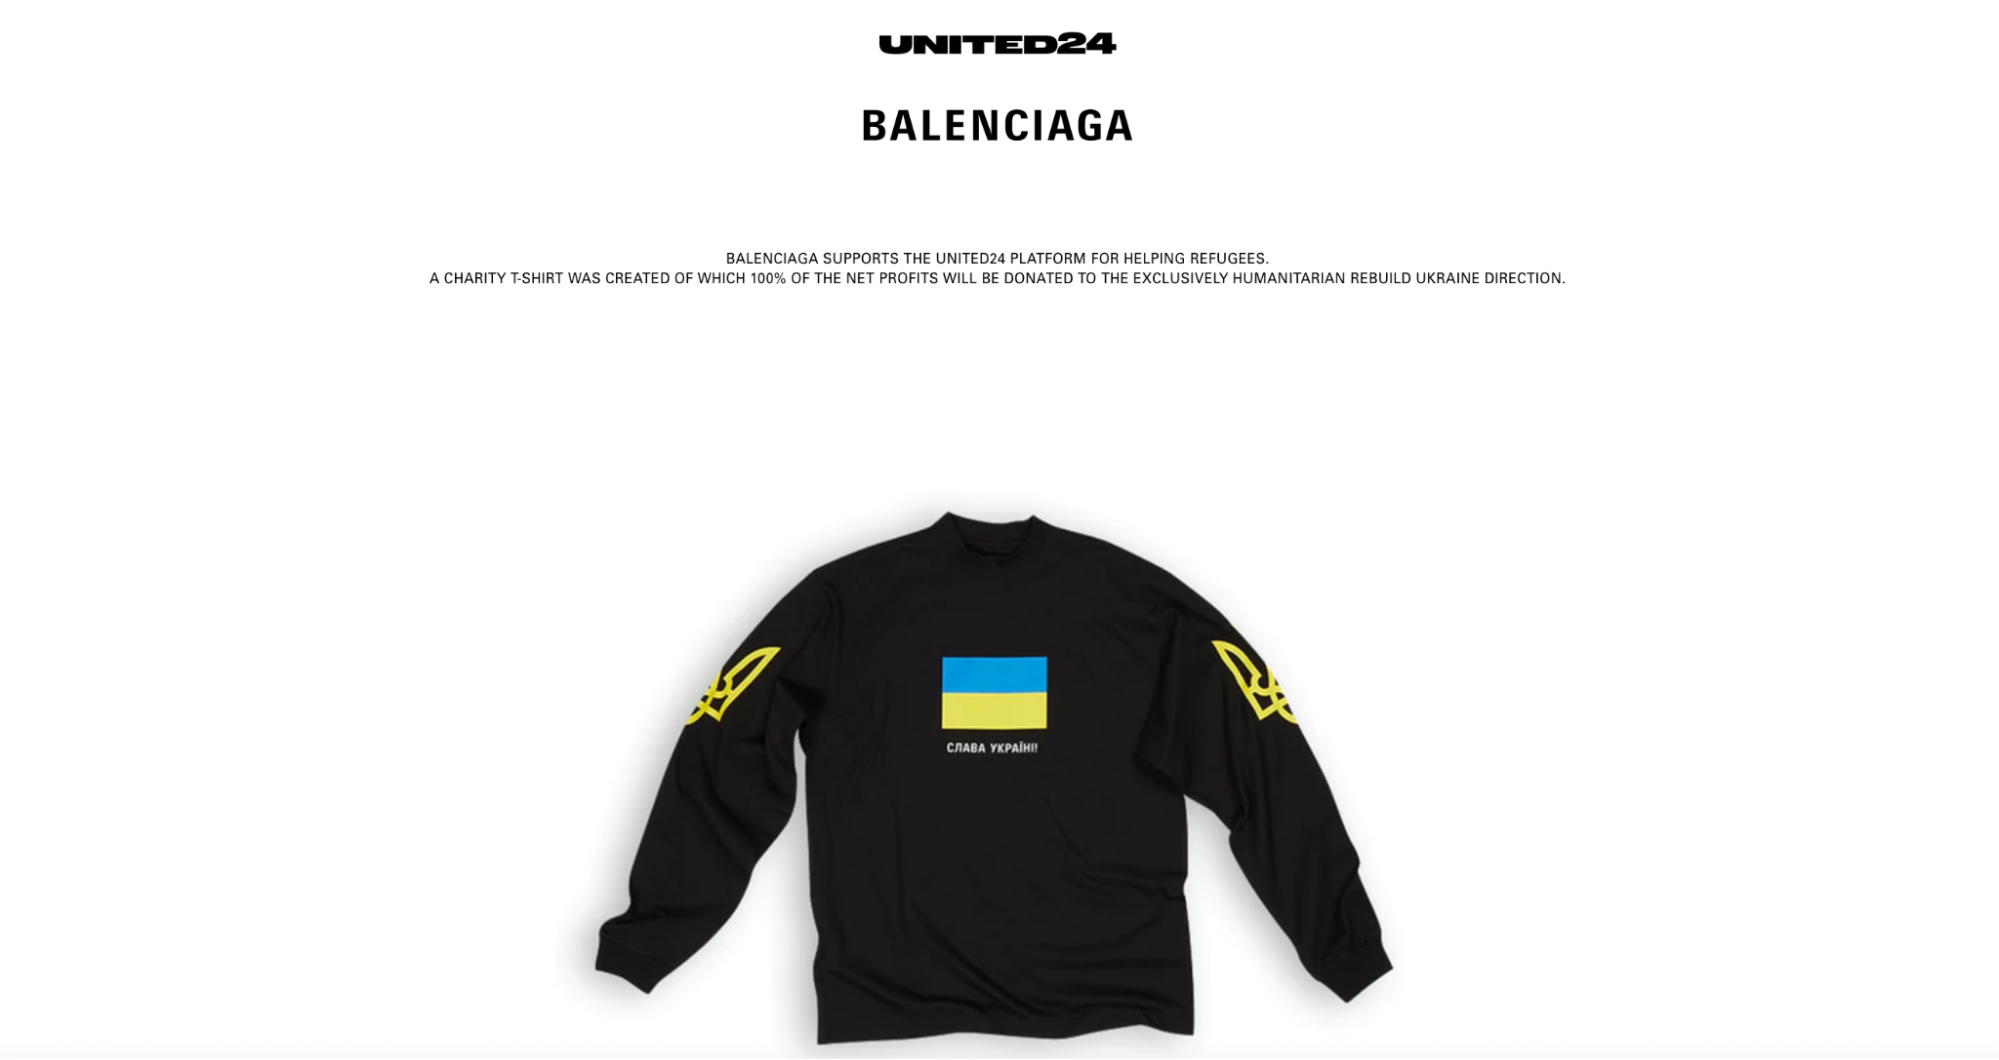 Бренд Balenciaga поддерживает Украину